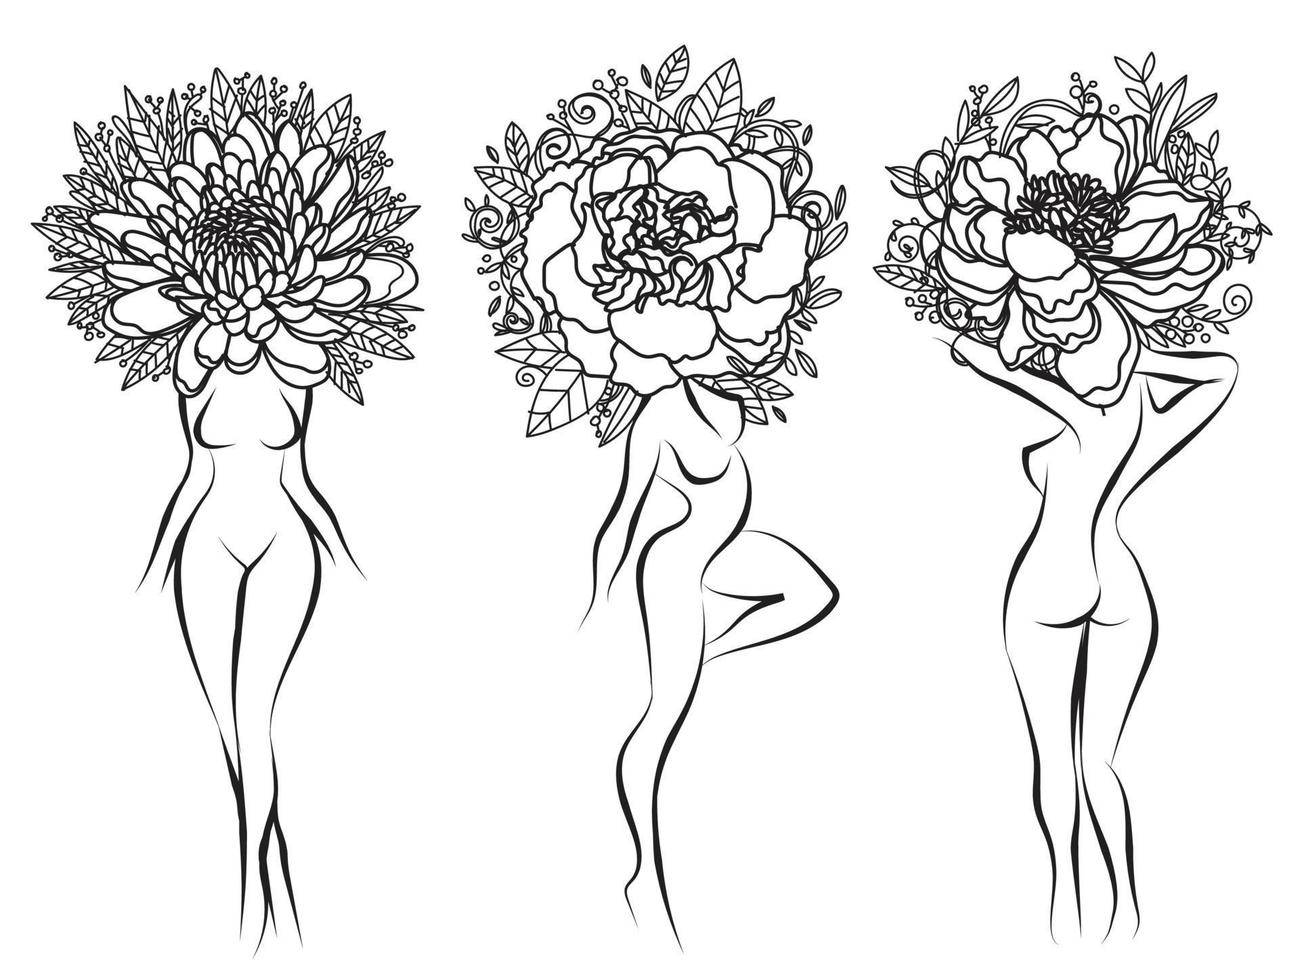 mujer tatuada con dibujo a mano de flores y boceto en blanco y negro vector